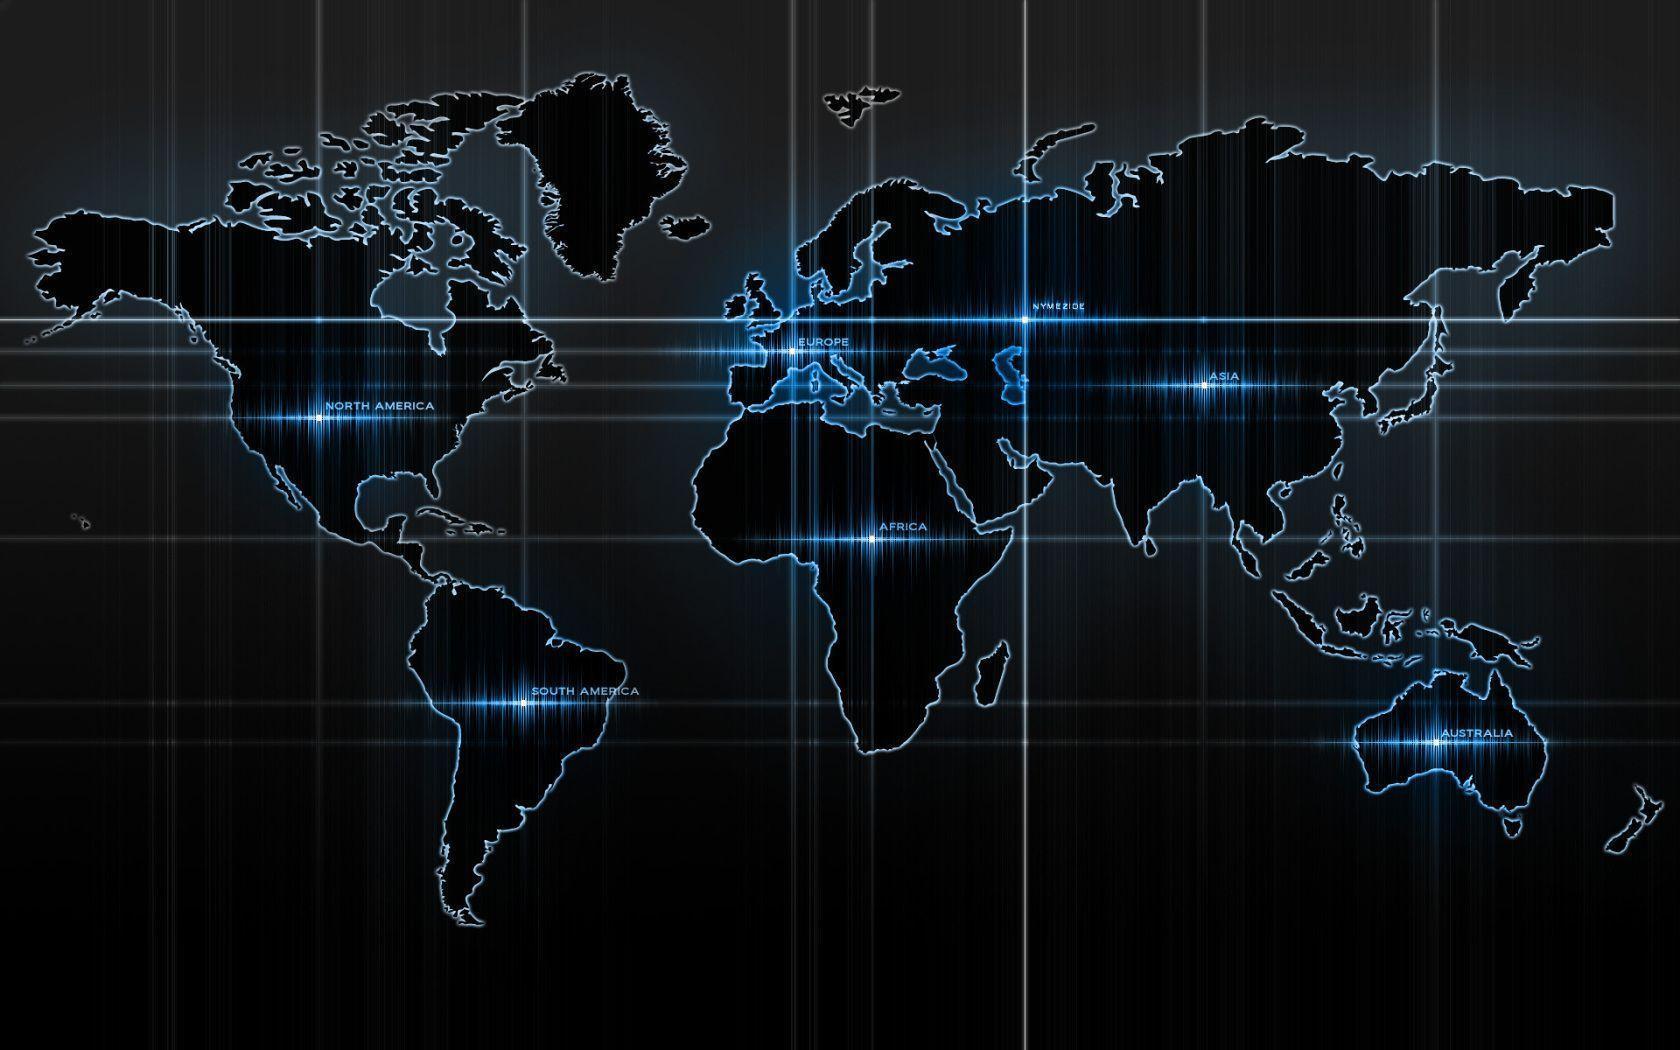 World Map widescreen wallpaper. Wide